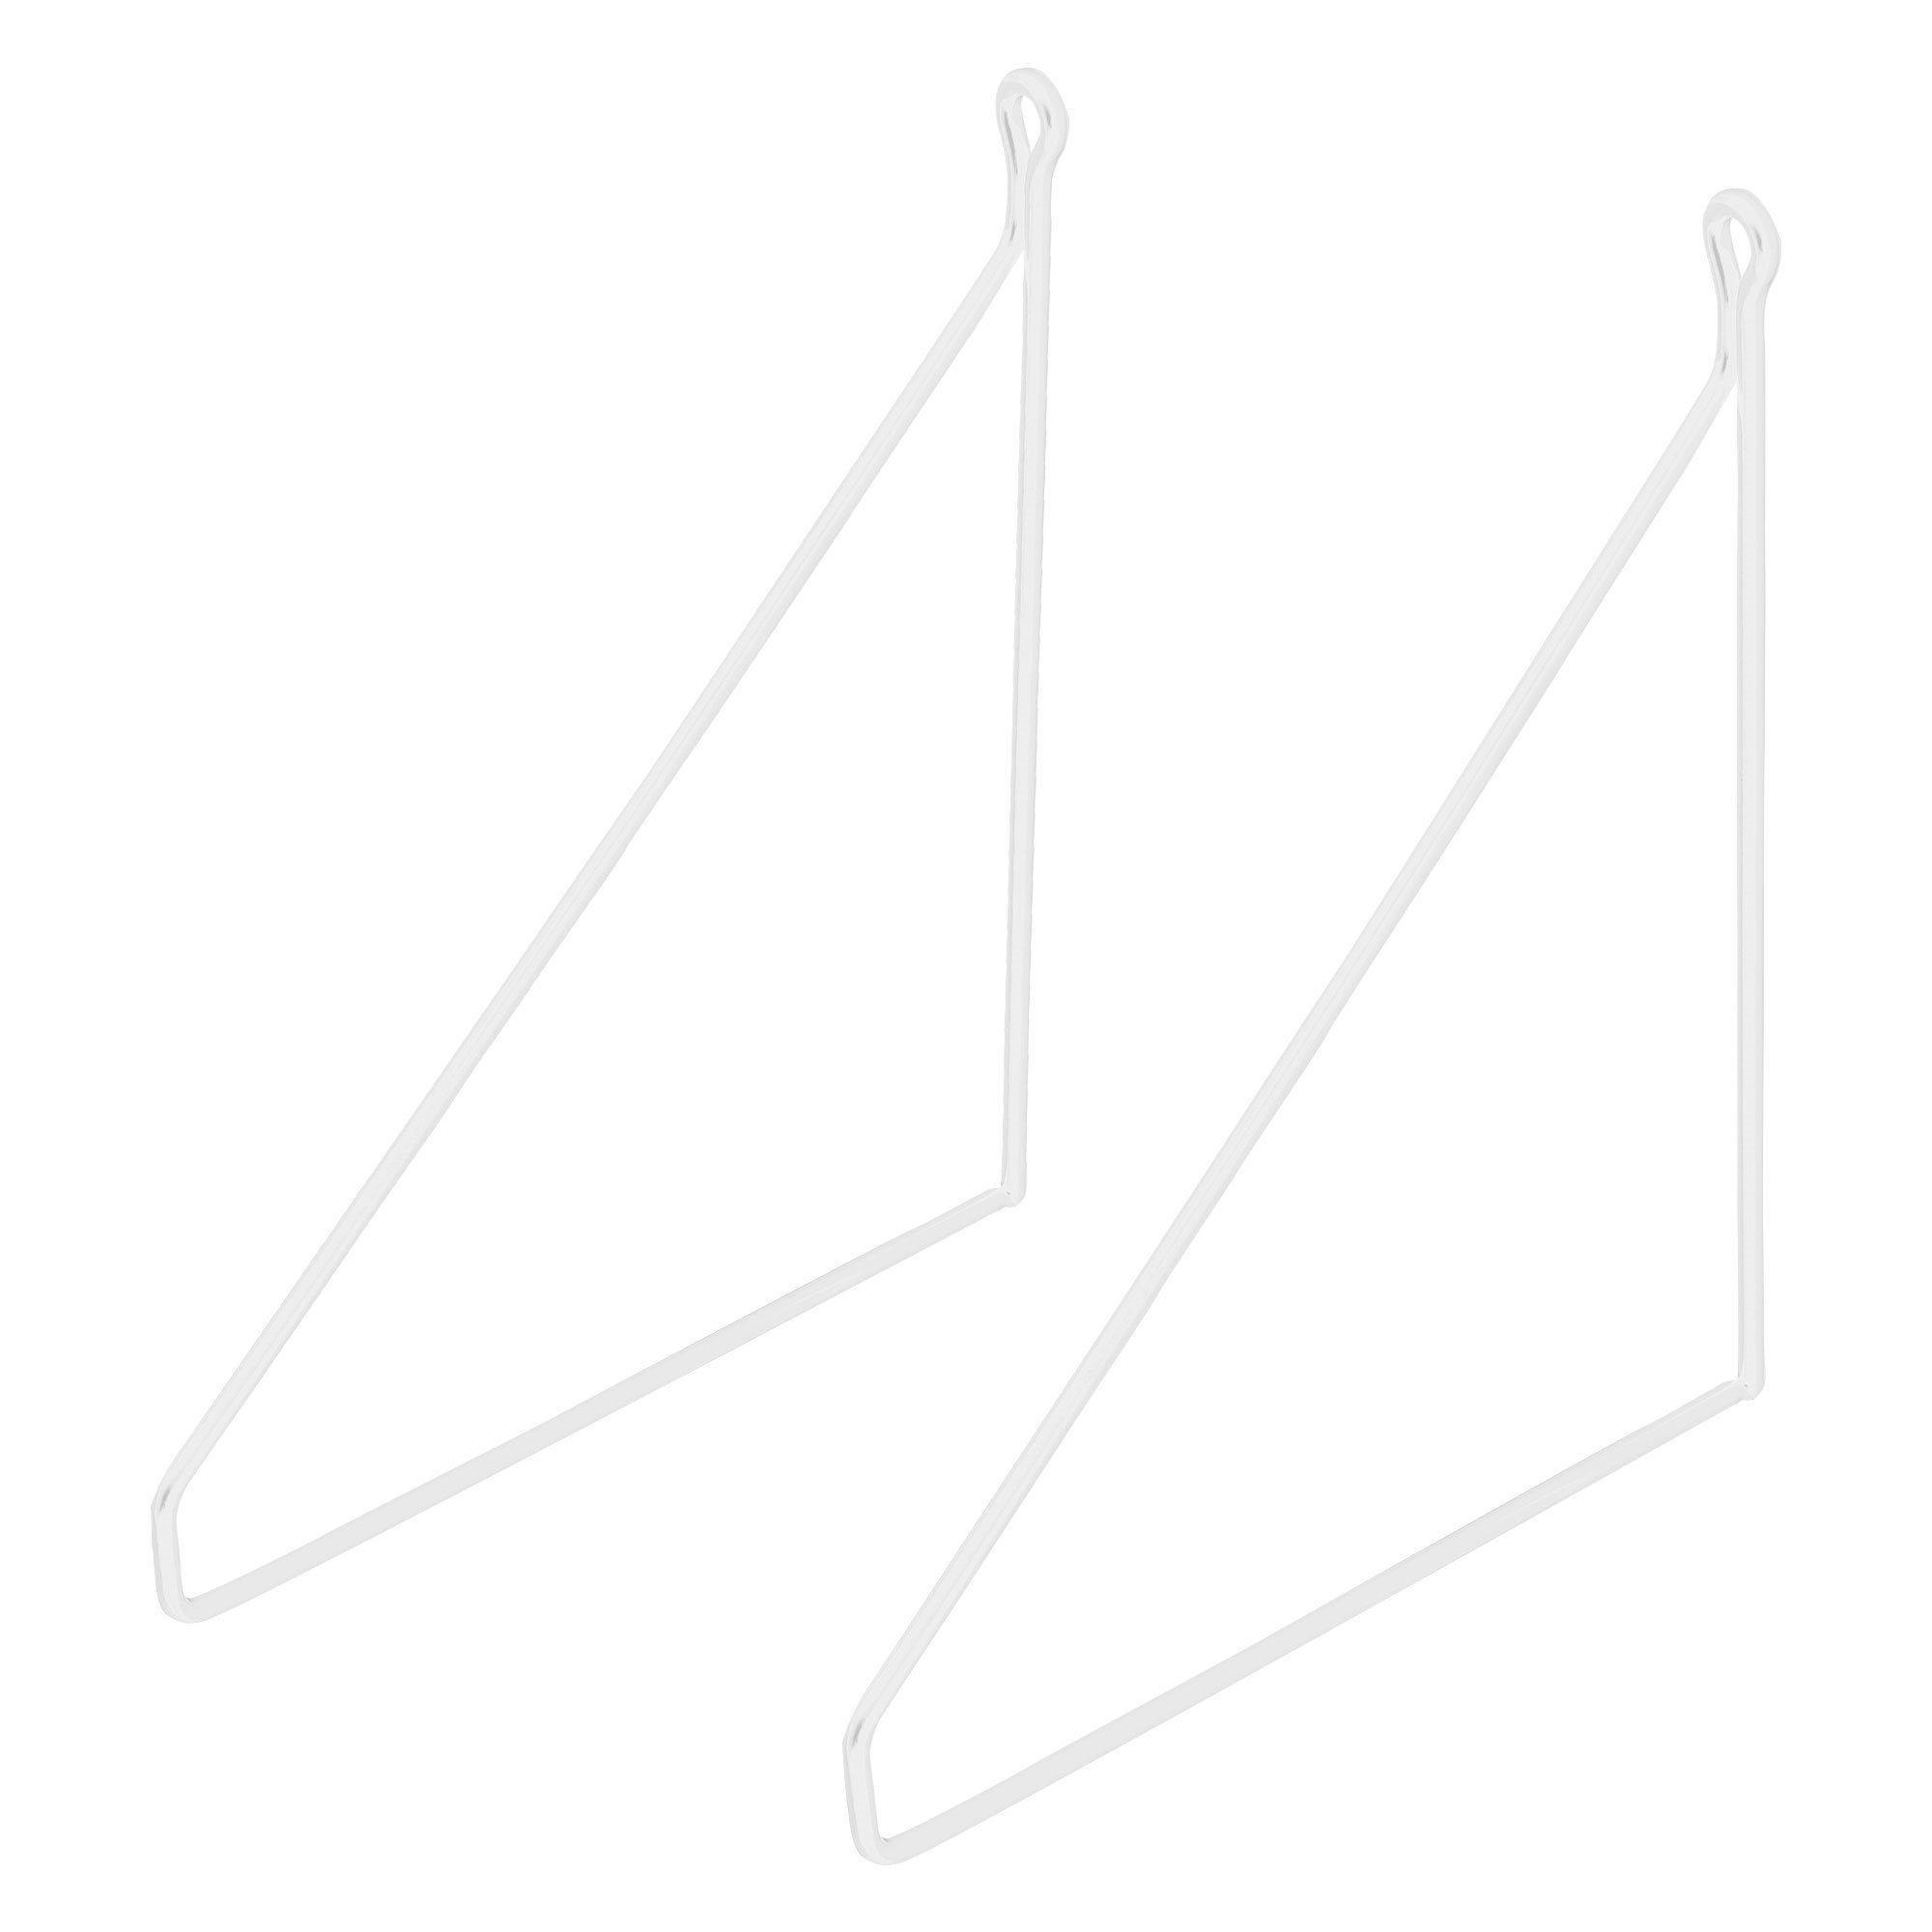 Regalhalterung Dreieckig Stück 2 Weiß ML-DESIGN Draht Wandmontage Regal Wandhalterung 250mm Regalwinkel Metall Regalträger, Schwebe